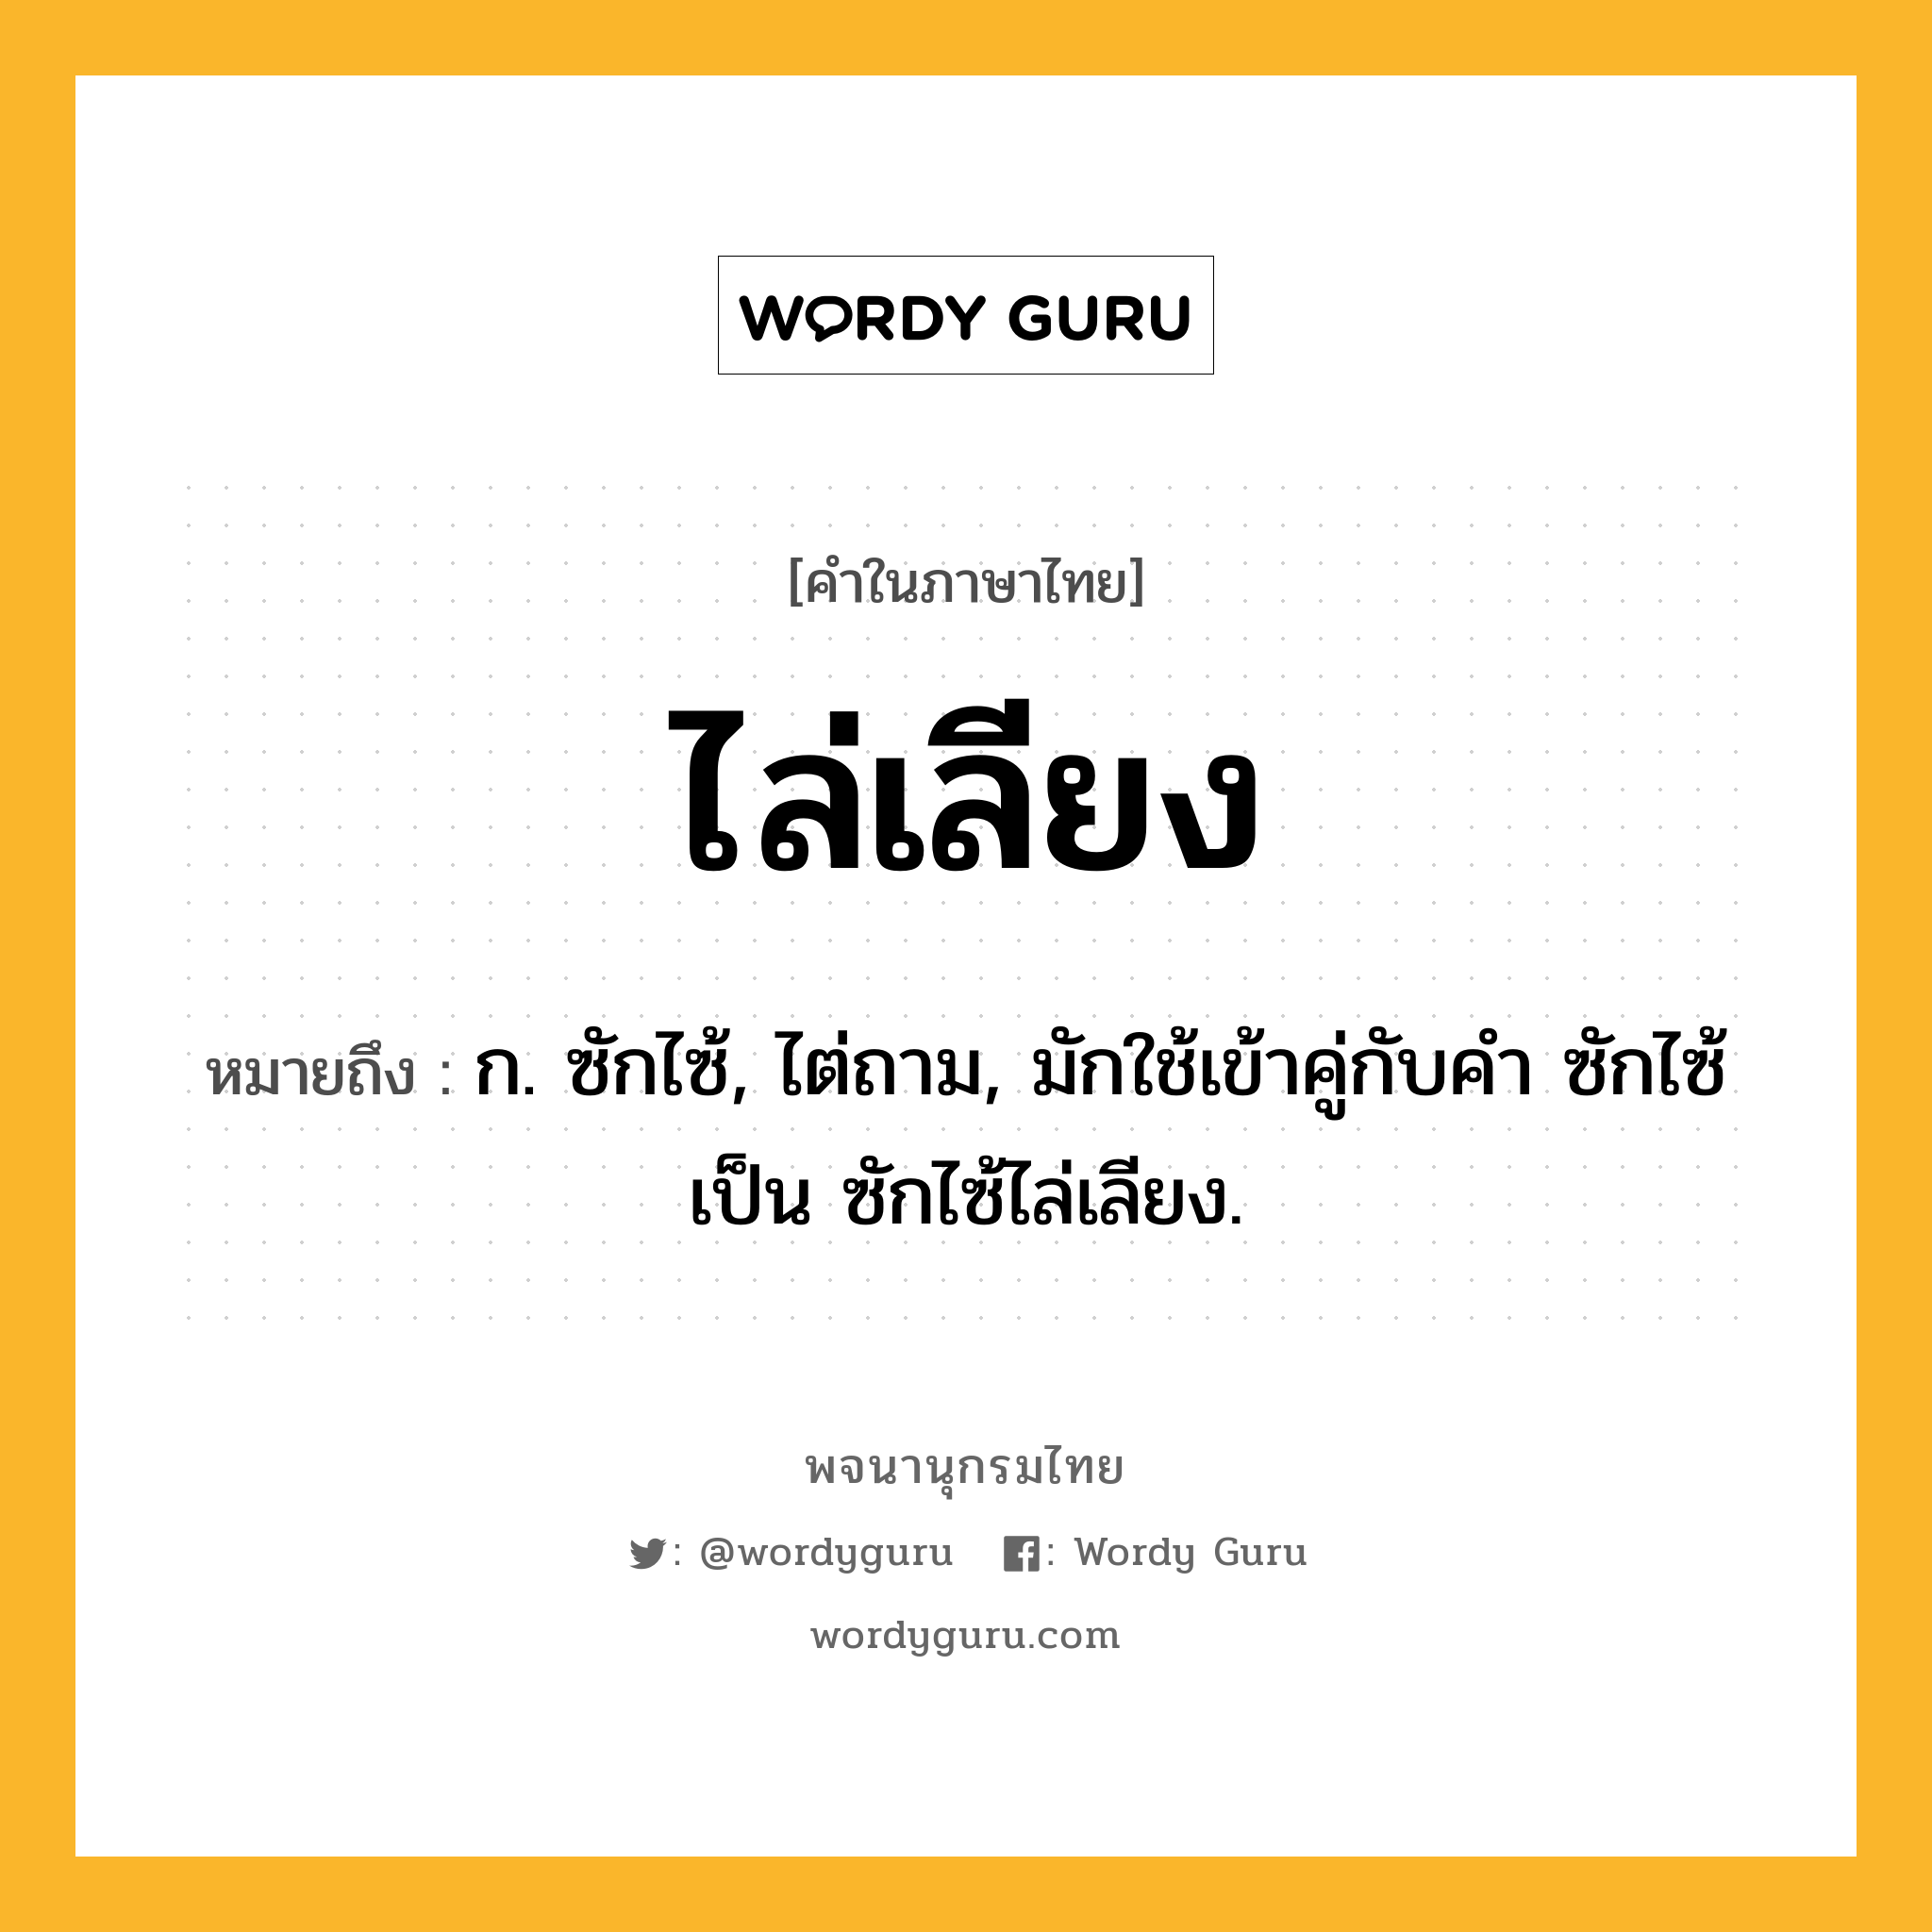 ไล่เลียง ความหมาย หมายถึงอะไร?, คำในภาษาไทย ไล่เลียง หมายถึง ก. ซักไซ้, ไต่ถาม, มักใช้เข้าคู่กับคำ ซักไซ้ เป็น ซักไซ้ไล่เลียง.